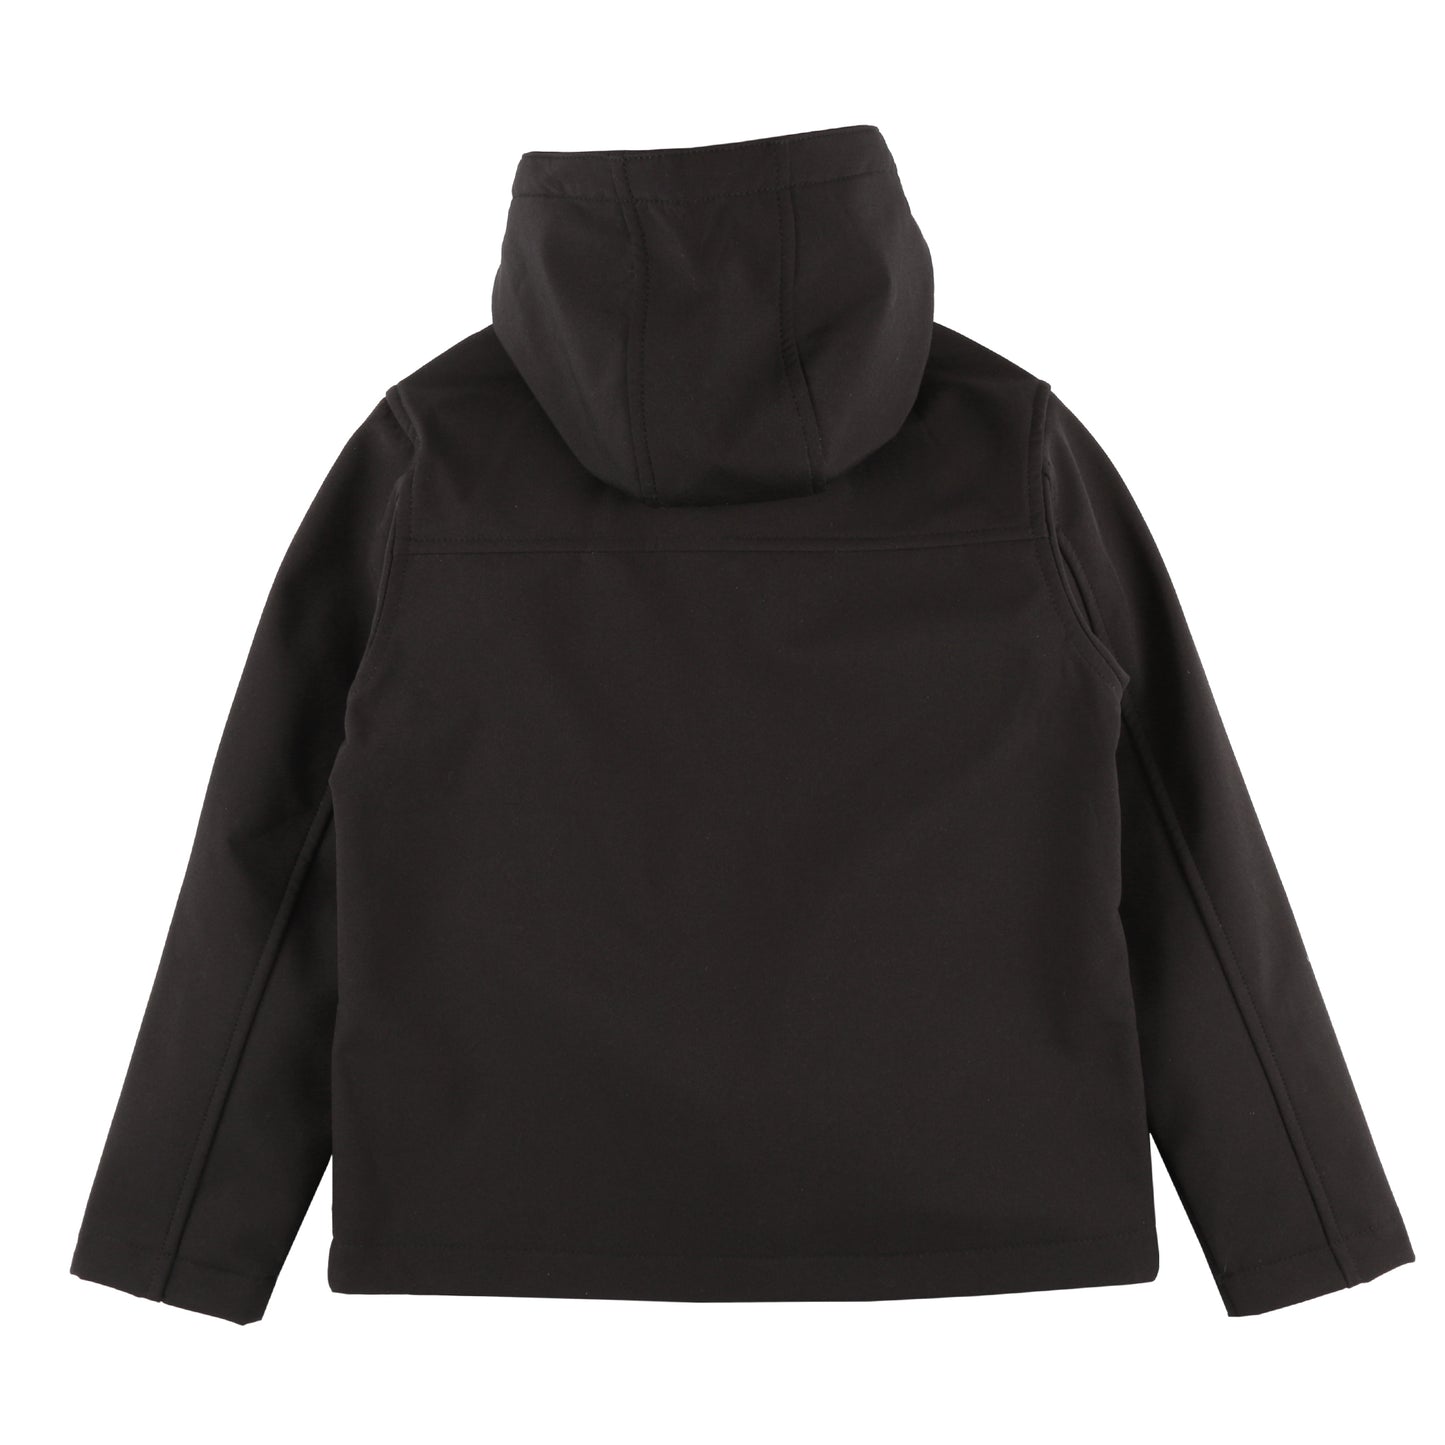 Black Unisex Kids Soft Shell Jacket